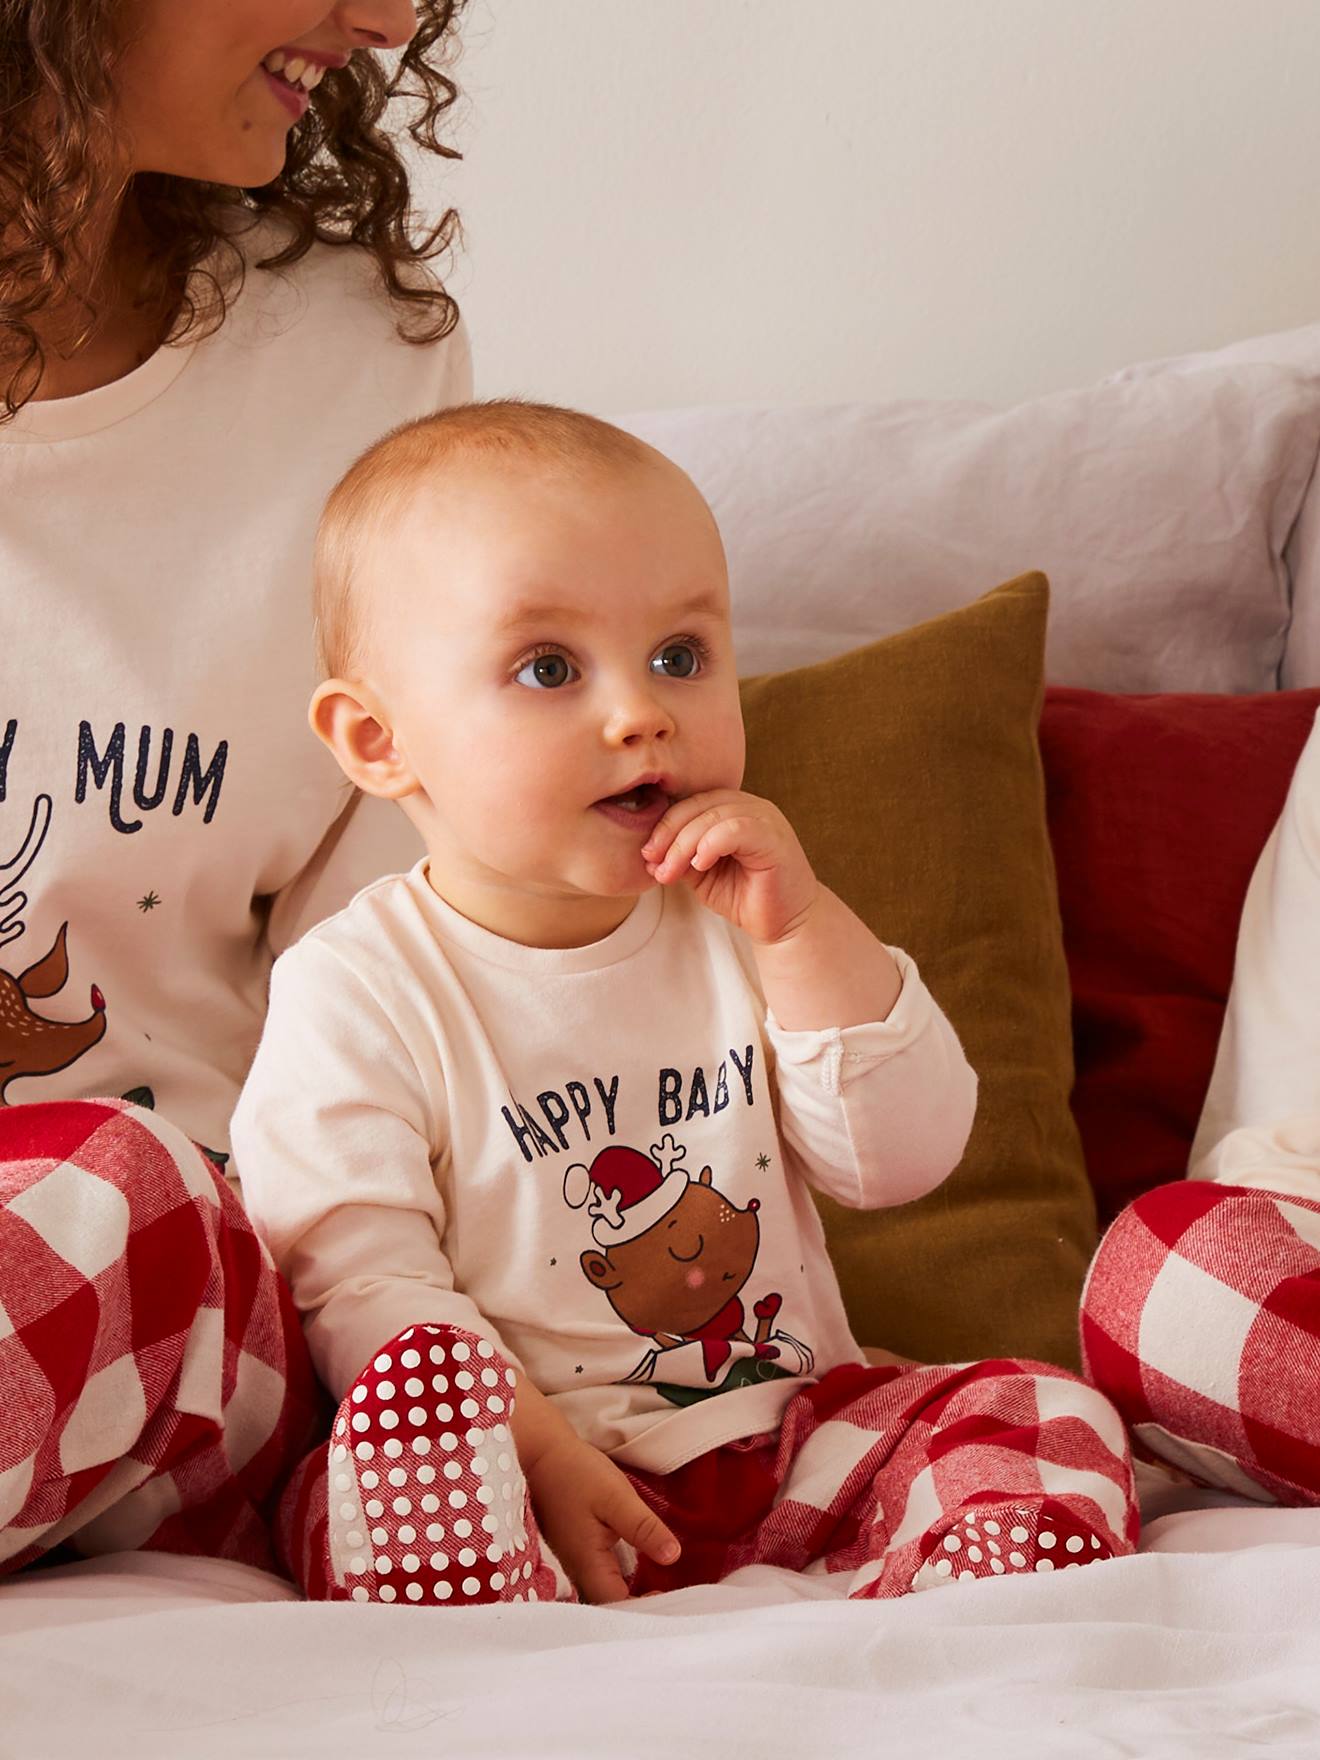 Pijama para bebé especial Navidad colección cápsula familia crudo -  Vertbaudet